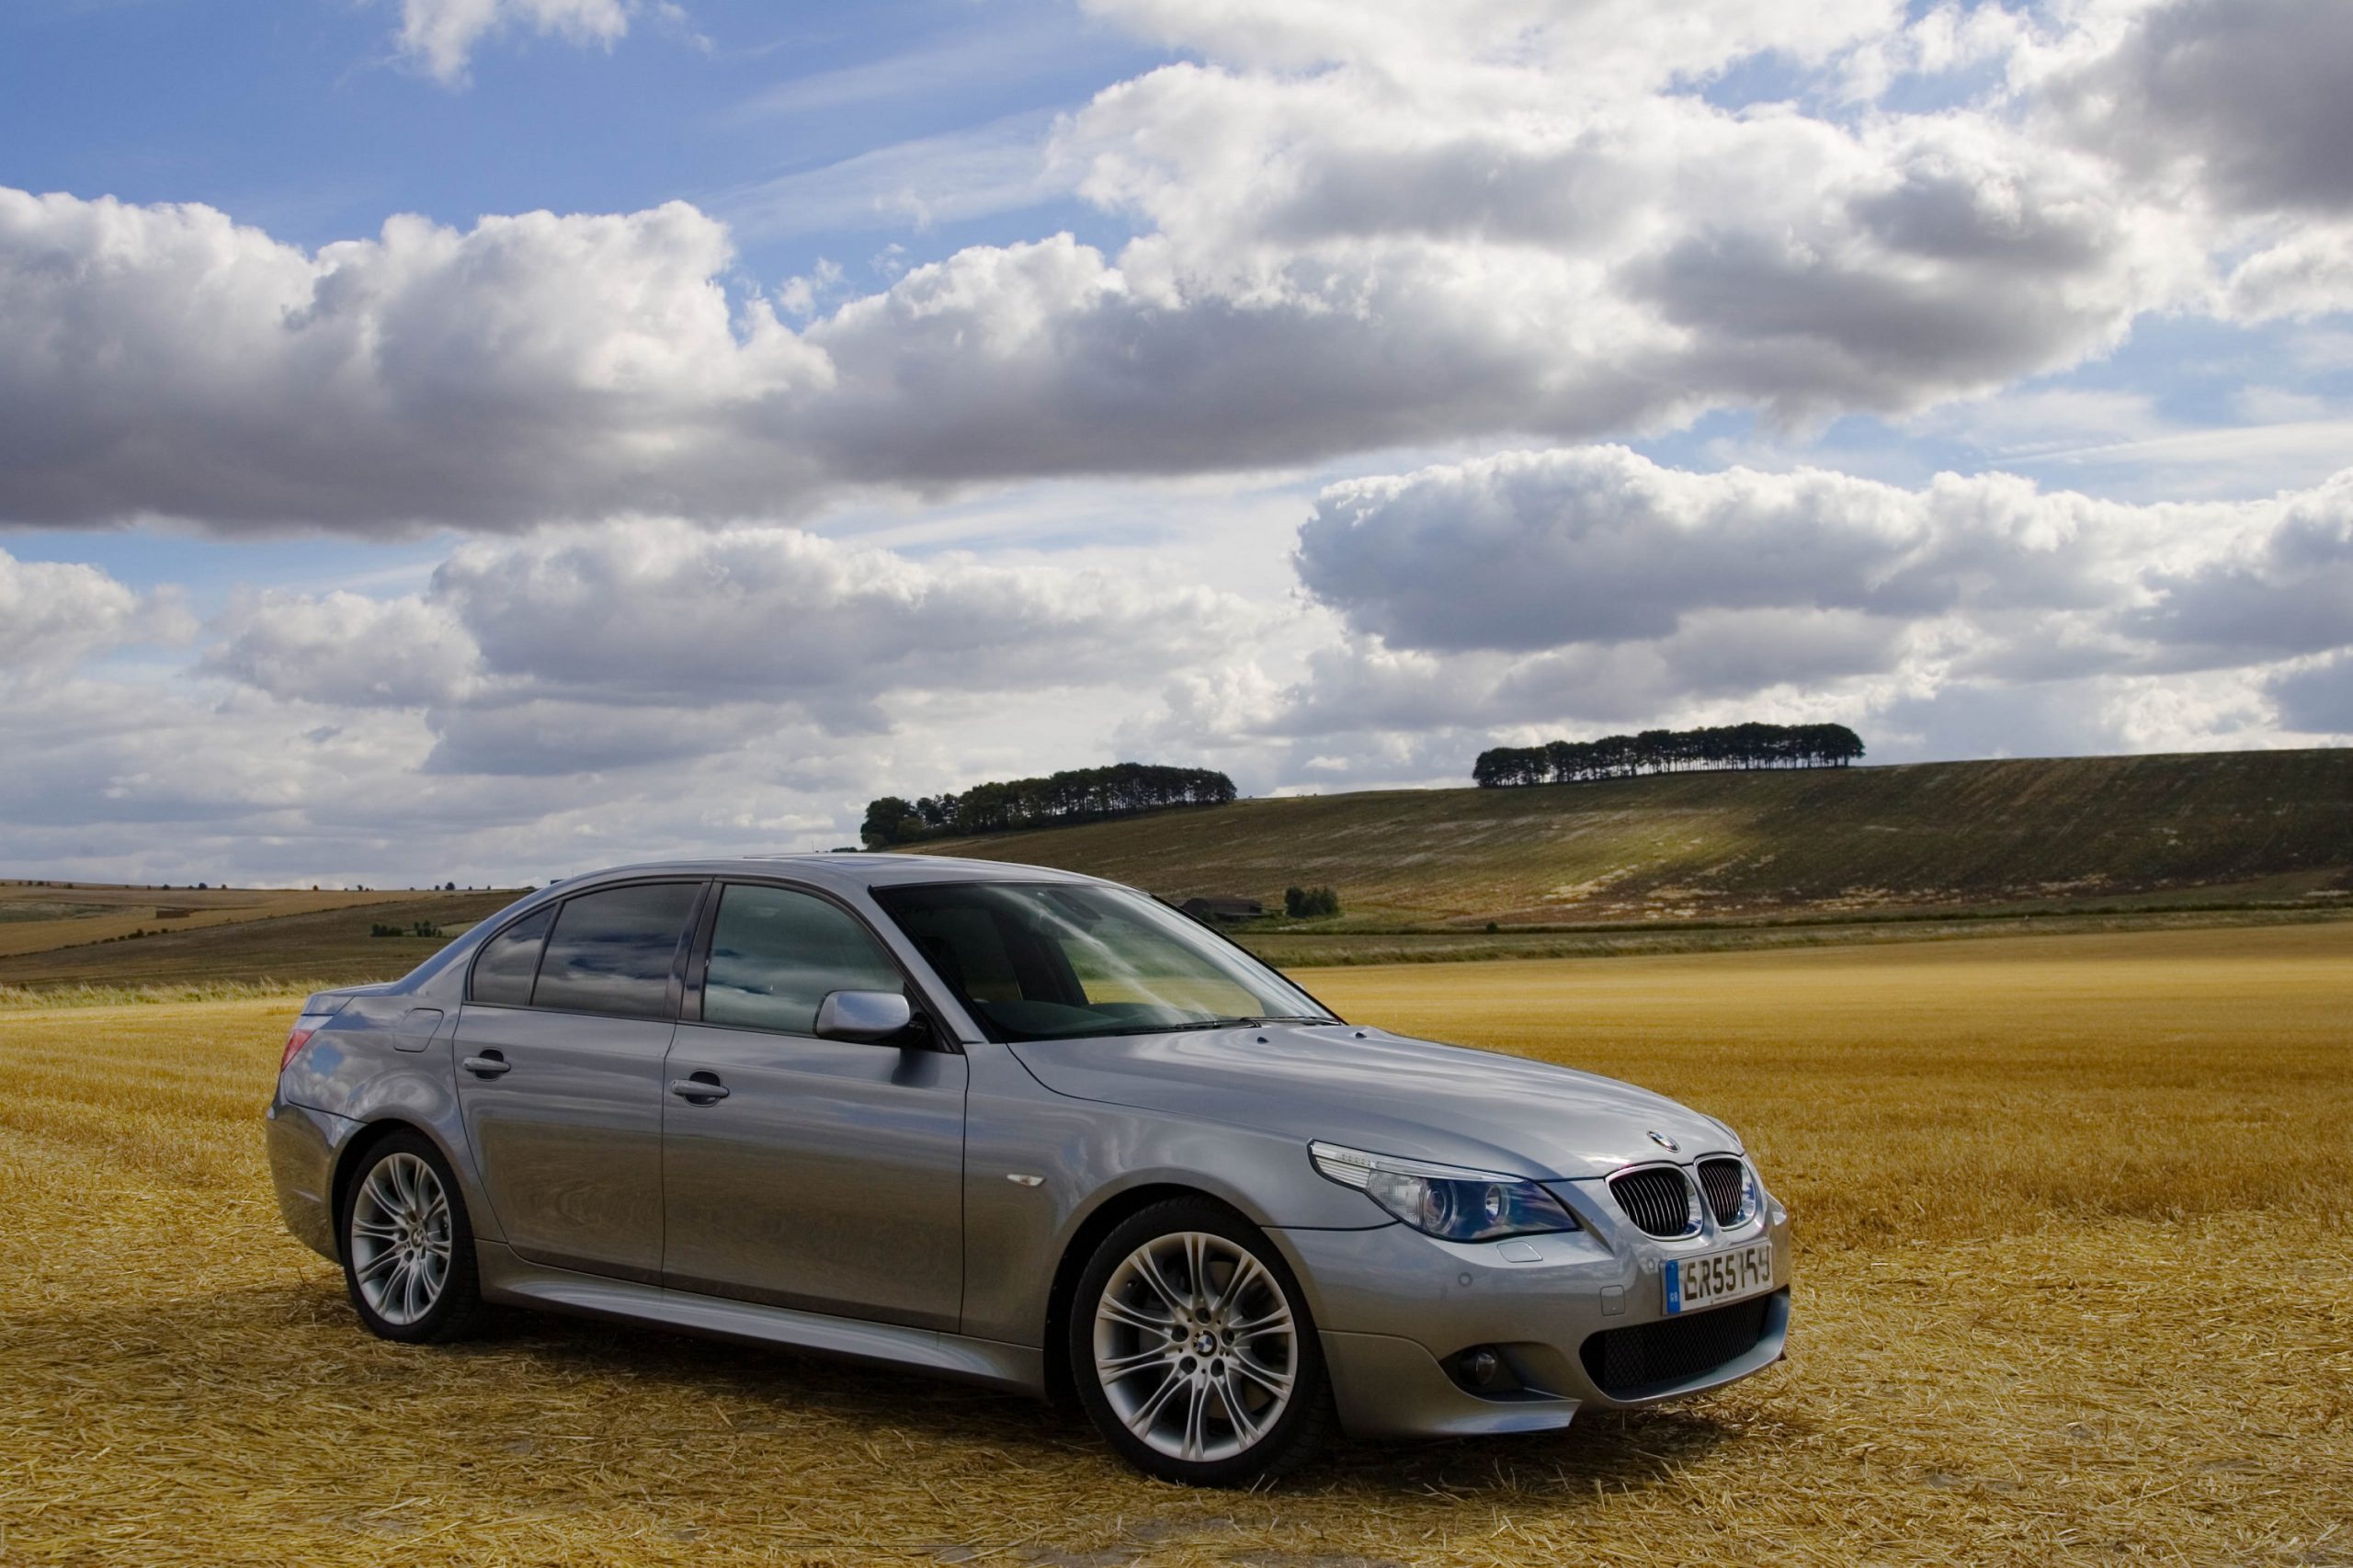 A BMW 550i sedan shot in a field